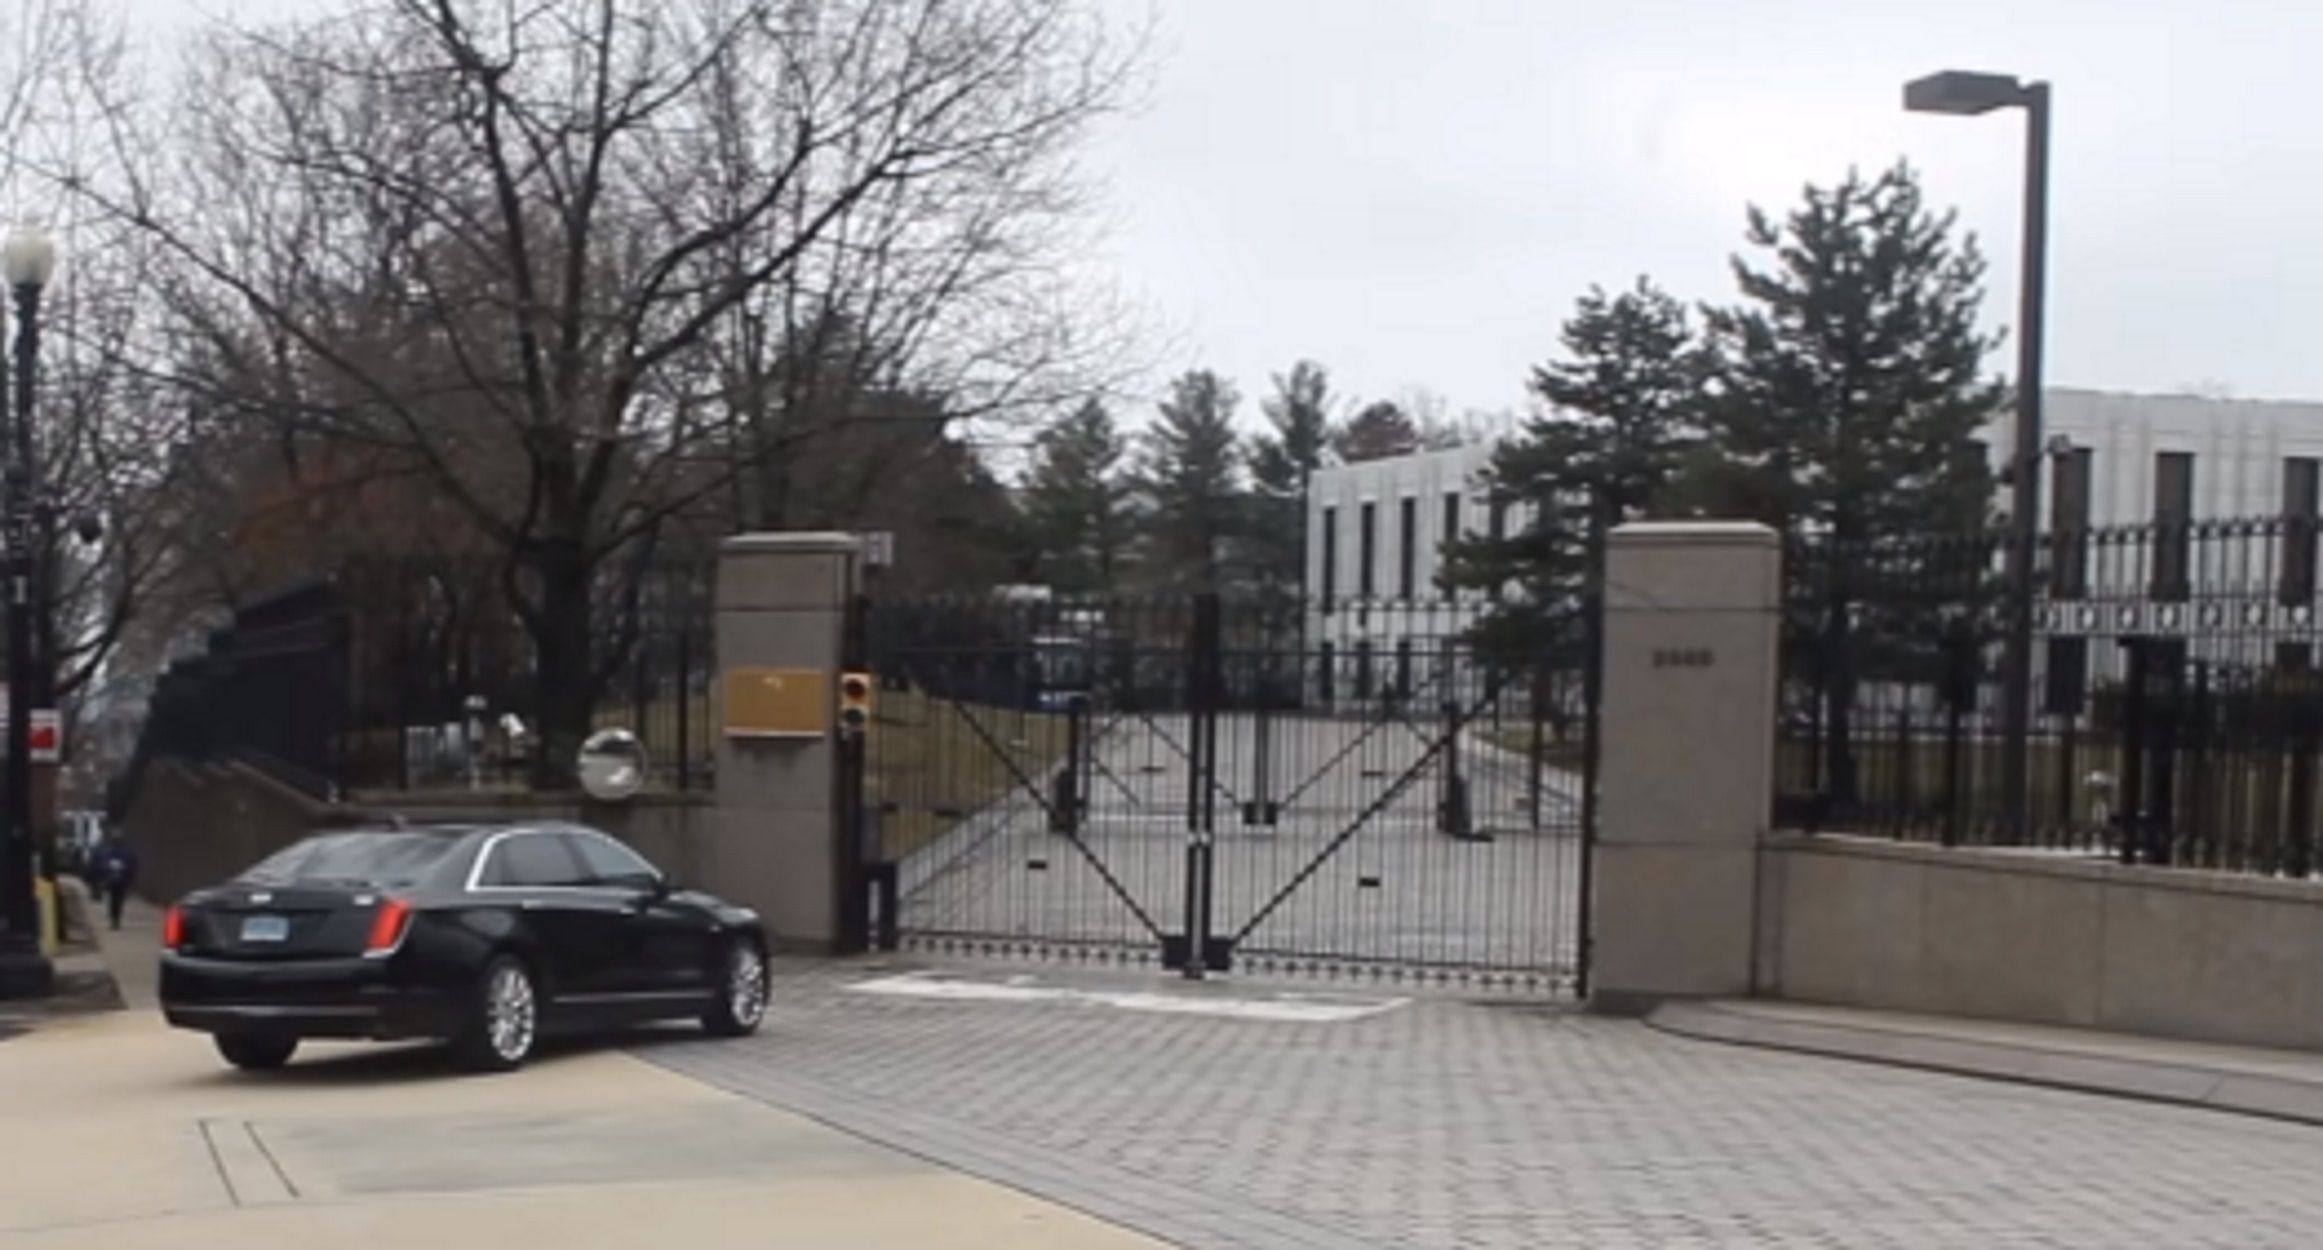 Ρωσία: Ρώσος εισέβαλε με αυτοκίνητο στην κατοικία του Αμερικανού πρέσβη στη Μόσχα